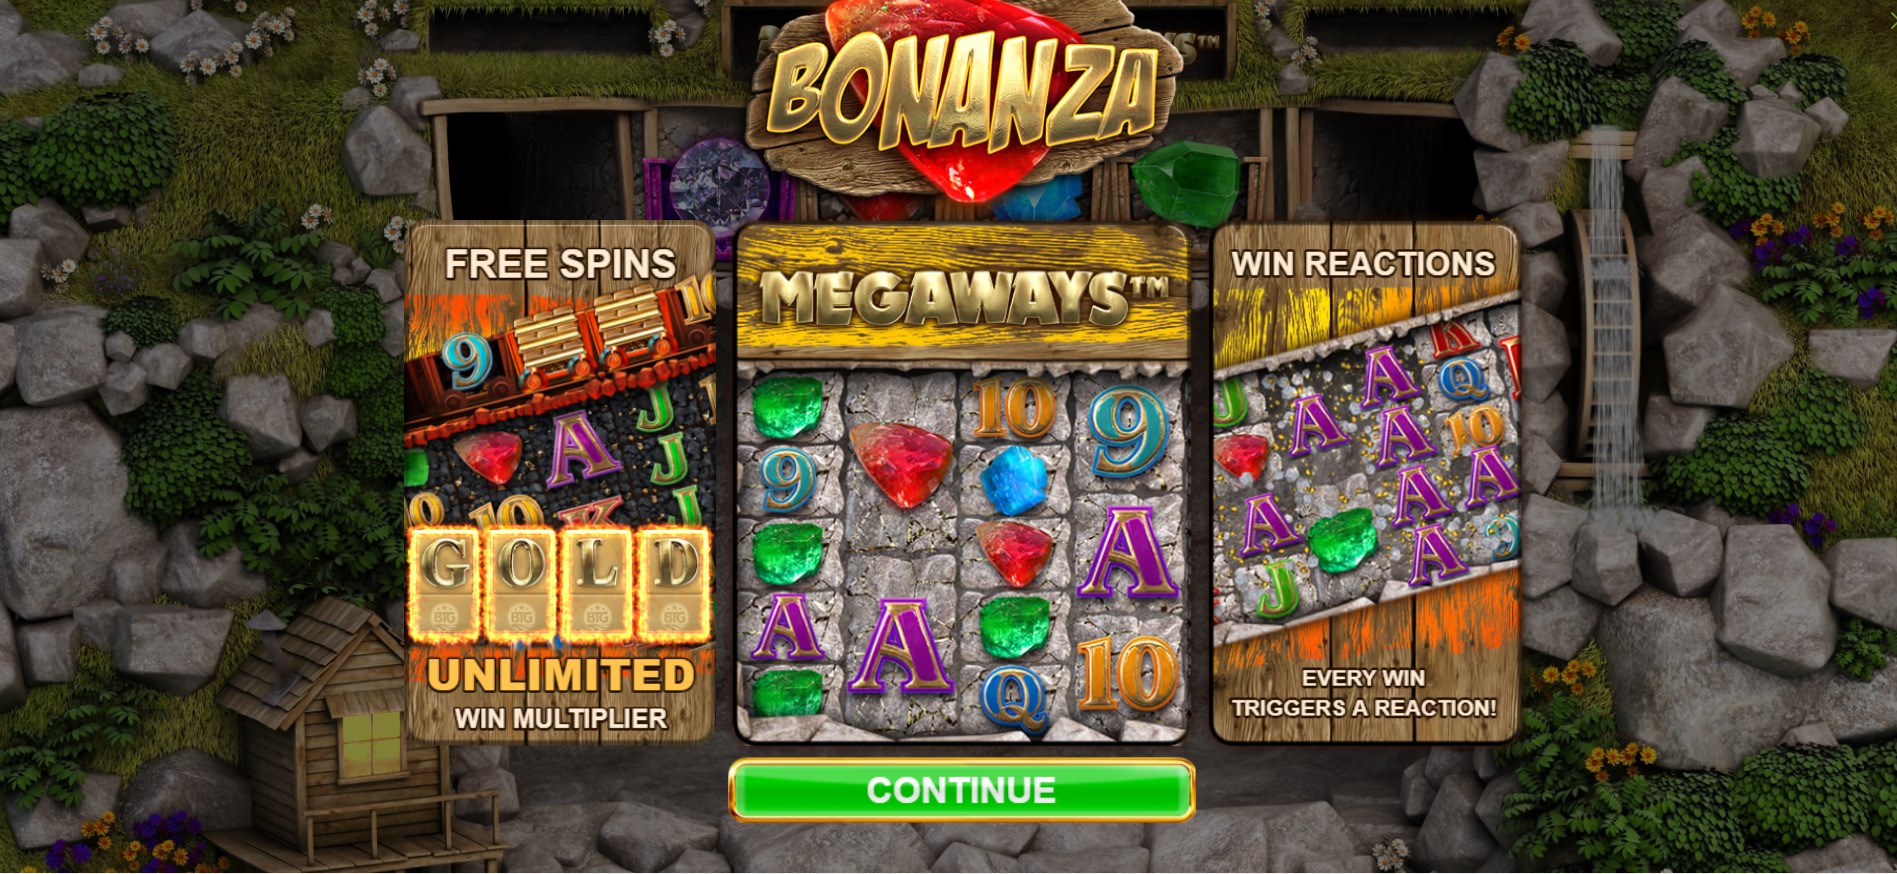 bonanza megaways slot review